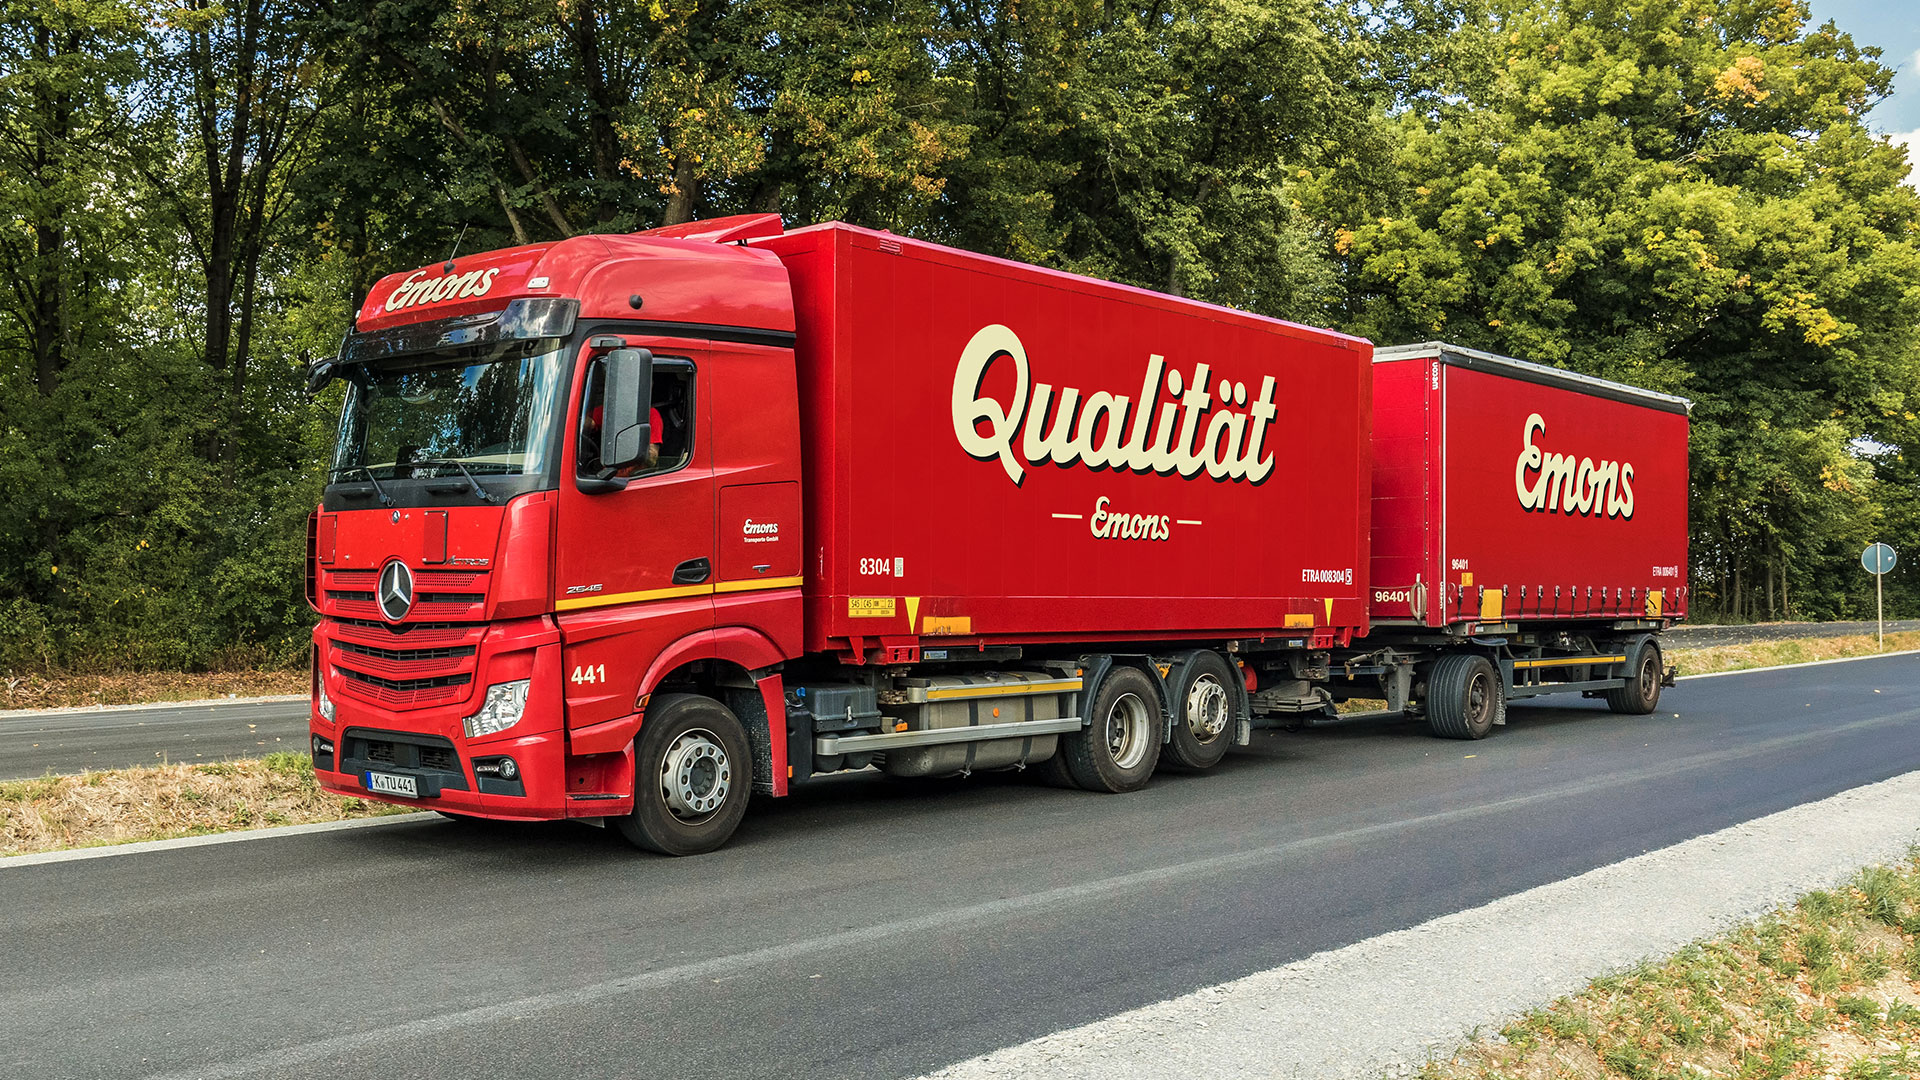 Roter Truck im Grünen mit der Aufschrift "Qualität"